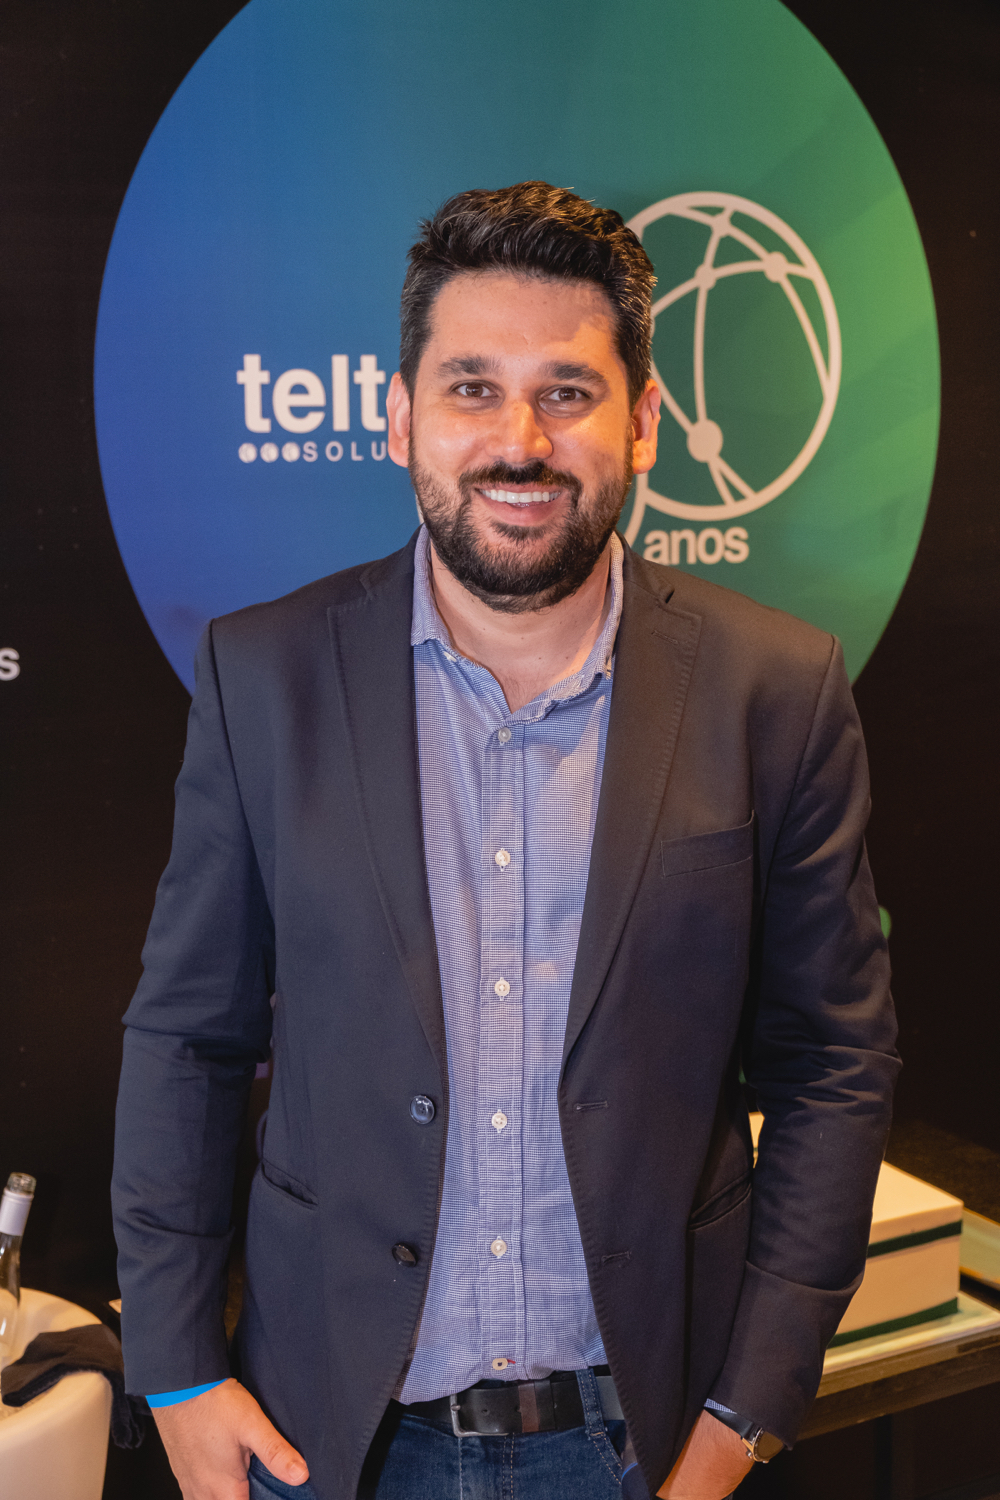 Teltec Solutions Cresce 29 Nas Regiões Centro Oeste E Norte Do Brasil Direito And Negócios 4497